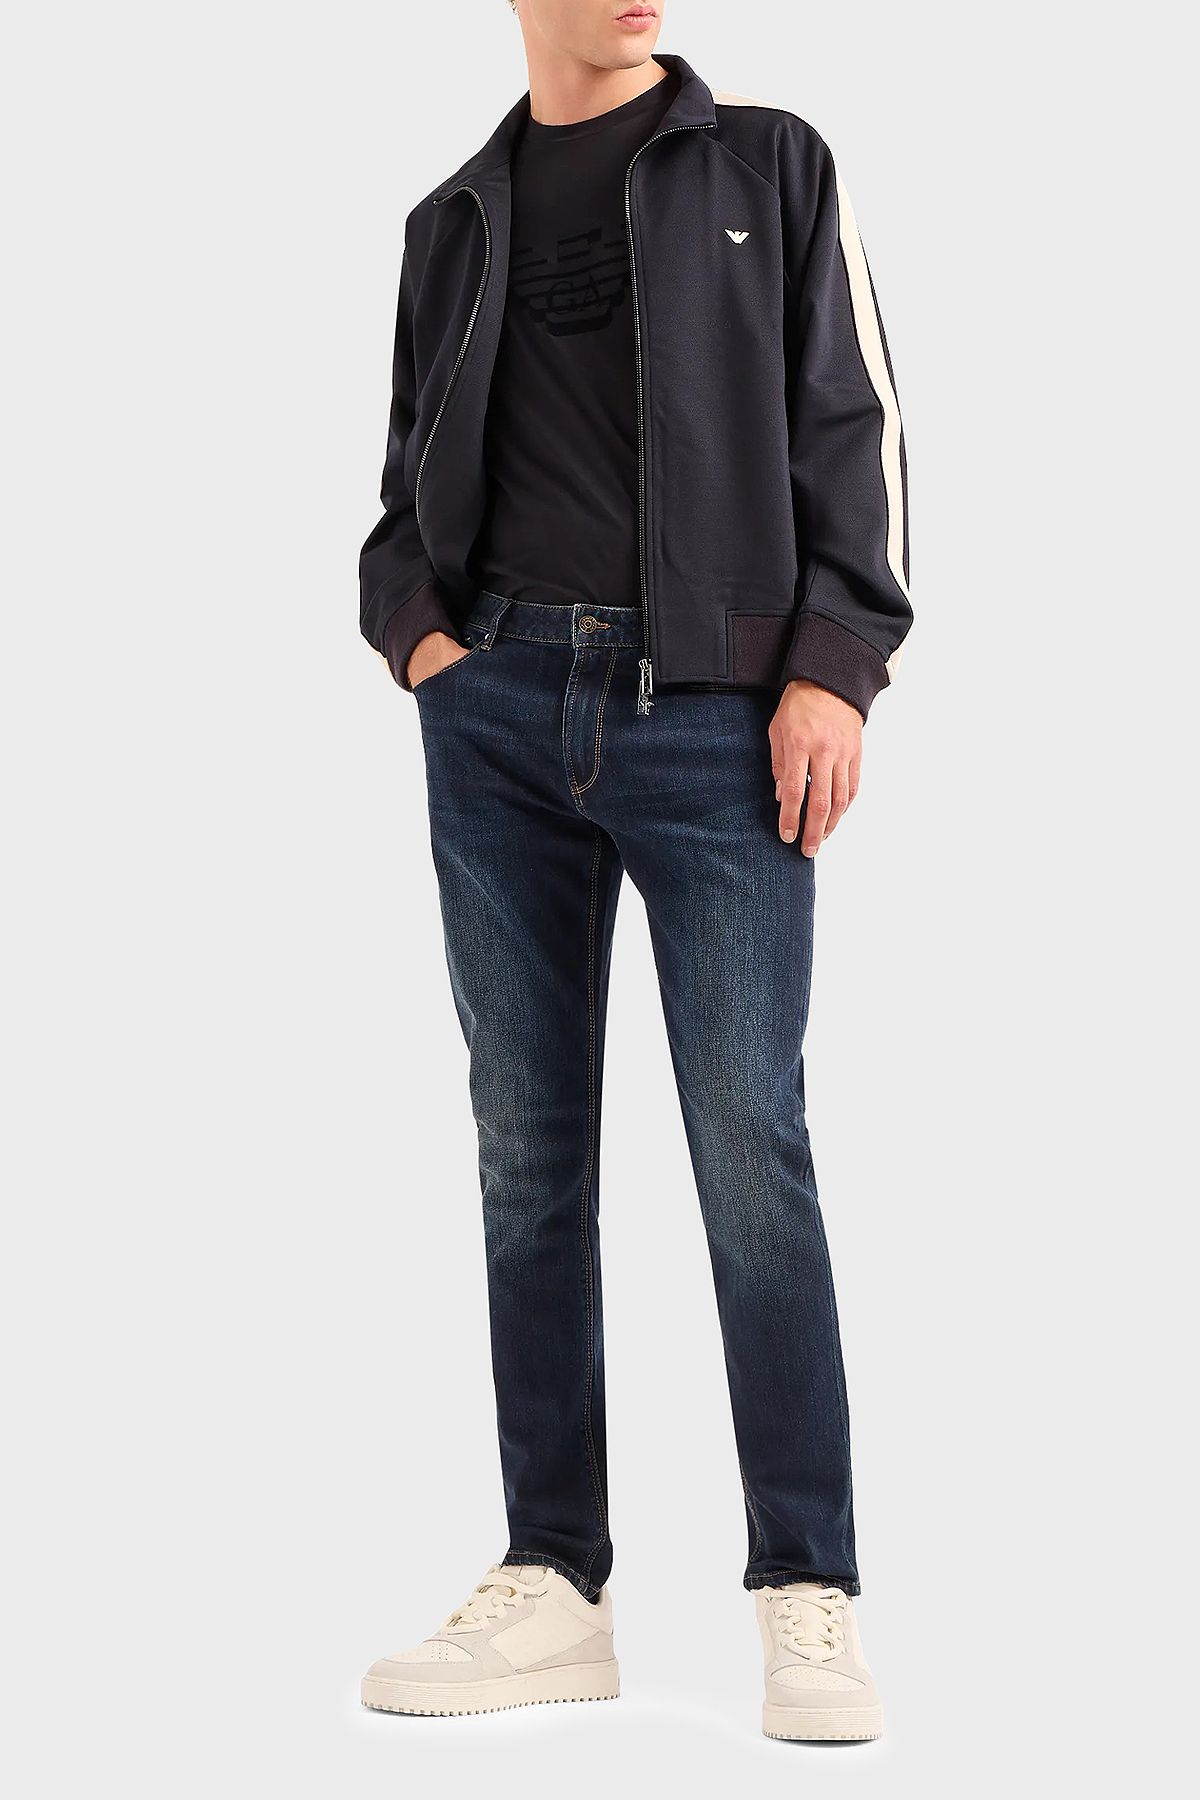 Emporio Armani J06 Slim Fit Vintage Effect Comfort Jeans Erkek KOT PANTOLON 6R1J06 1DRHZ 0941